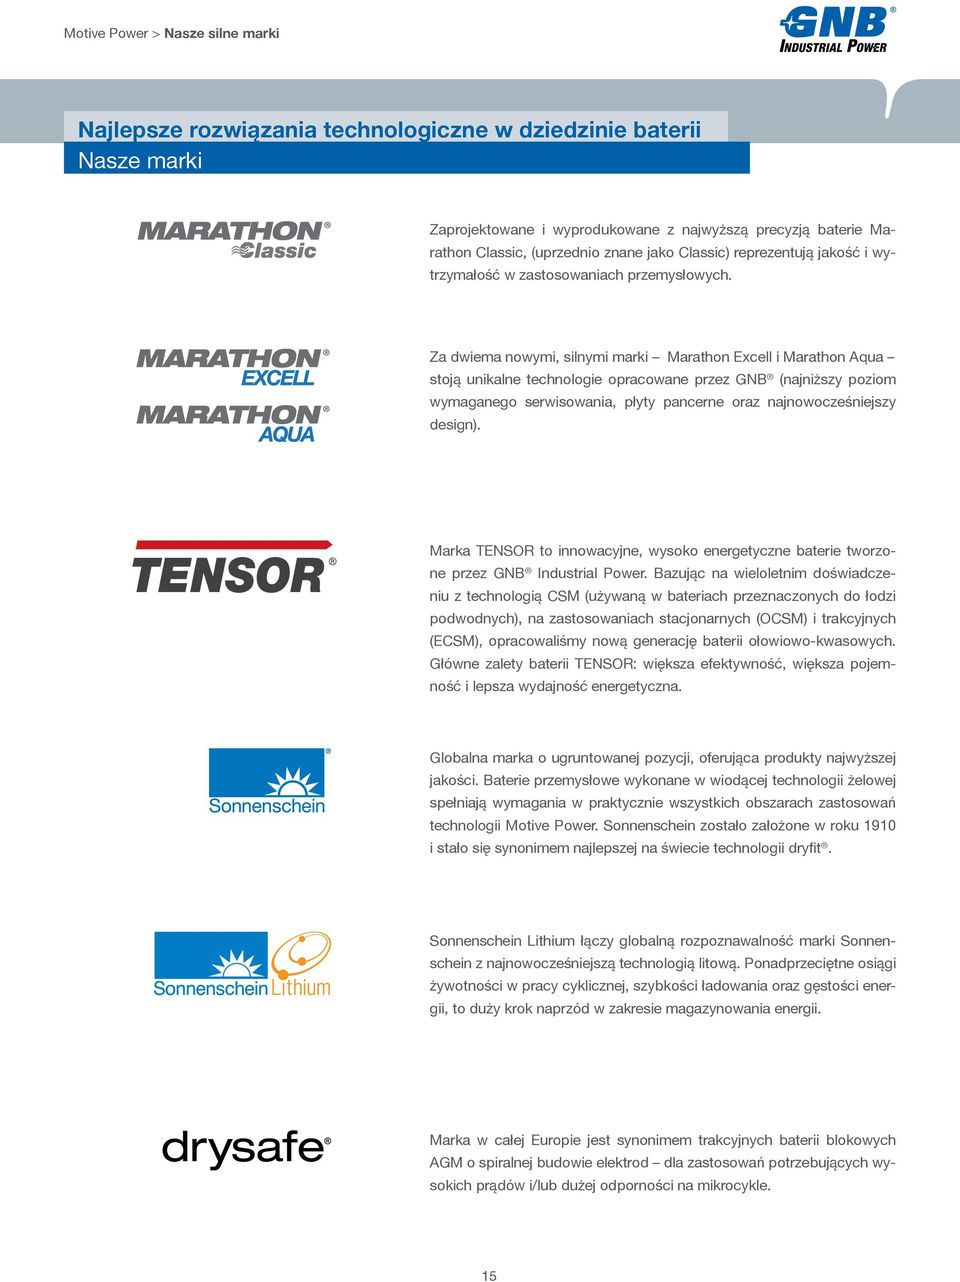 Za dwiema nowymi, silnymi marki Marathon Excell i Marathon Aqua stoją unikalne technologie opracowane przez GNB (najniższy poziom wymaganego serwisowania, płyty pancerne oraz najnowocześniejszy